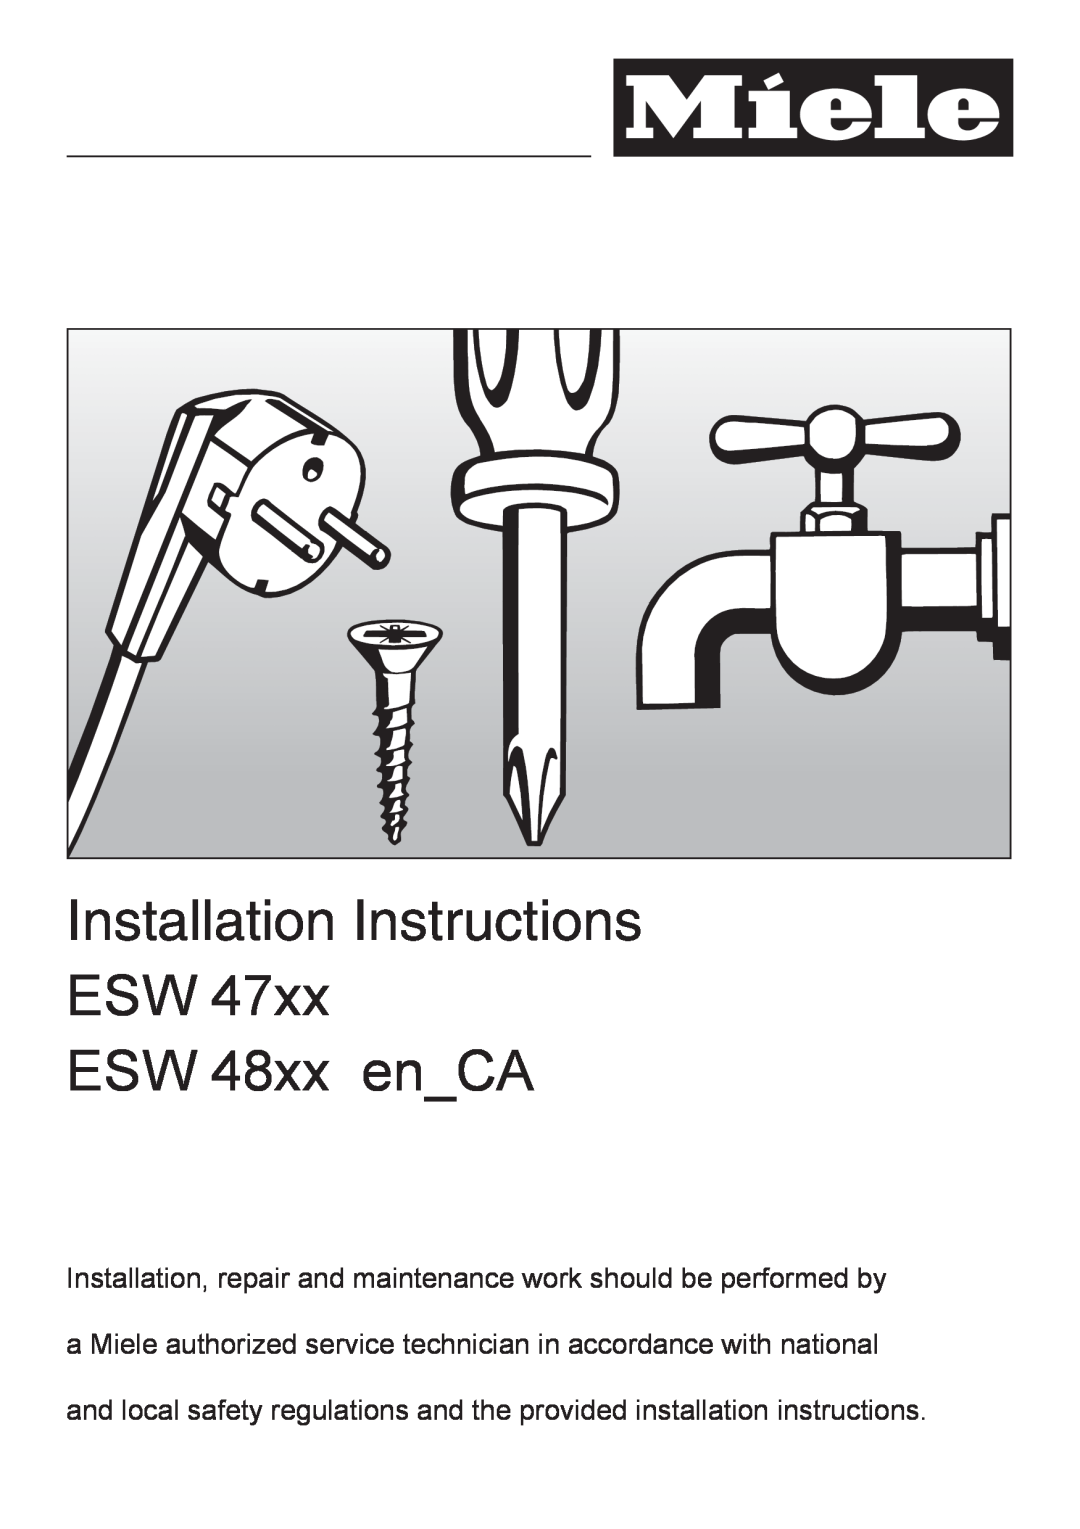 Miele ESW 48XX EN_CA, ESW 47XX installation instructions Installation Instructions, ESW ESW 48xx enCA 